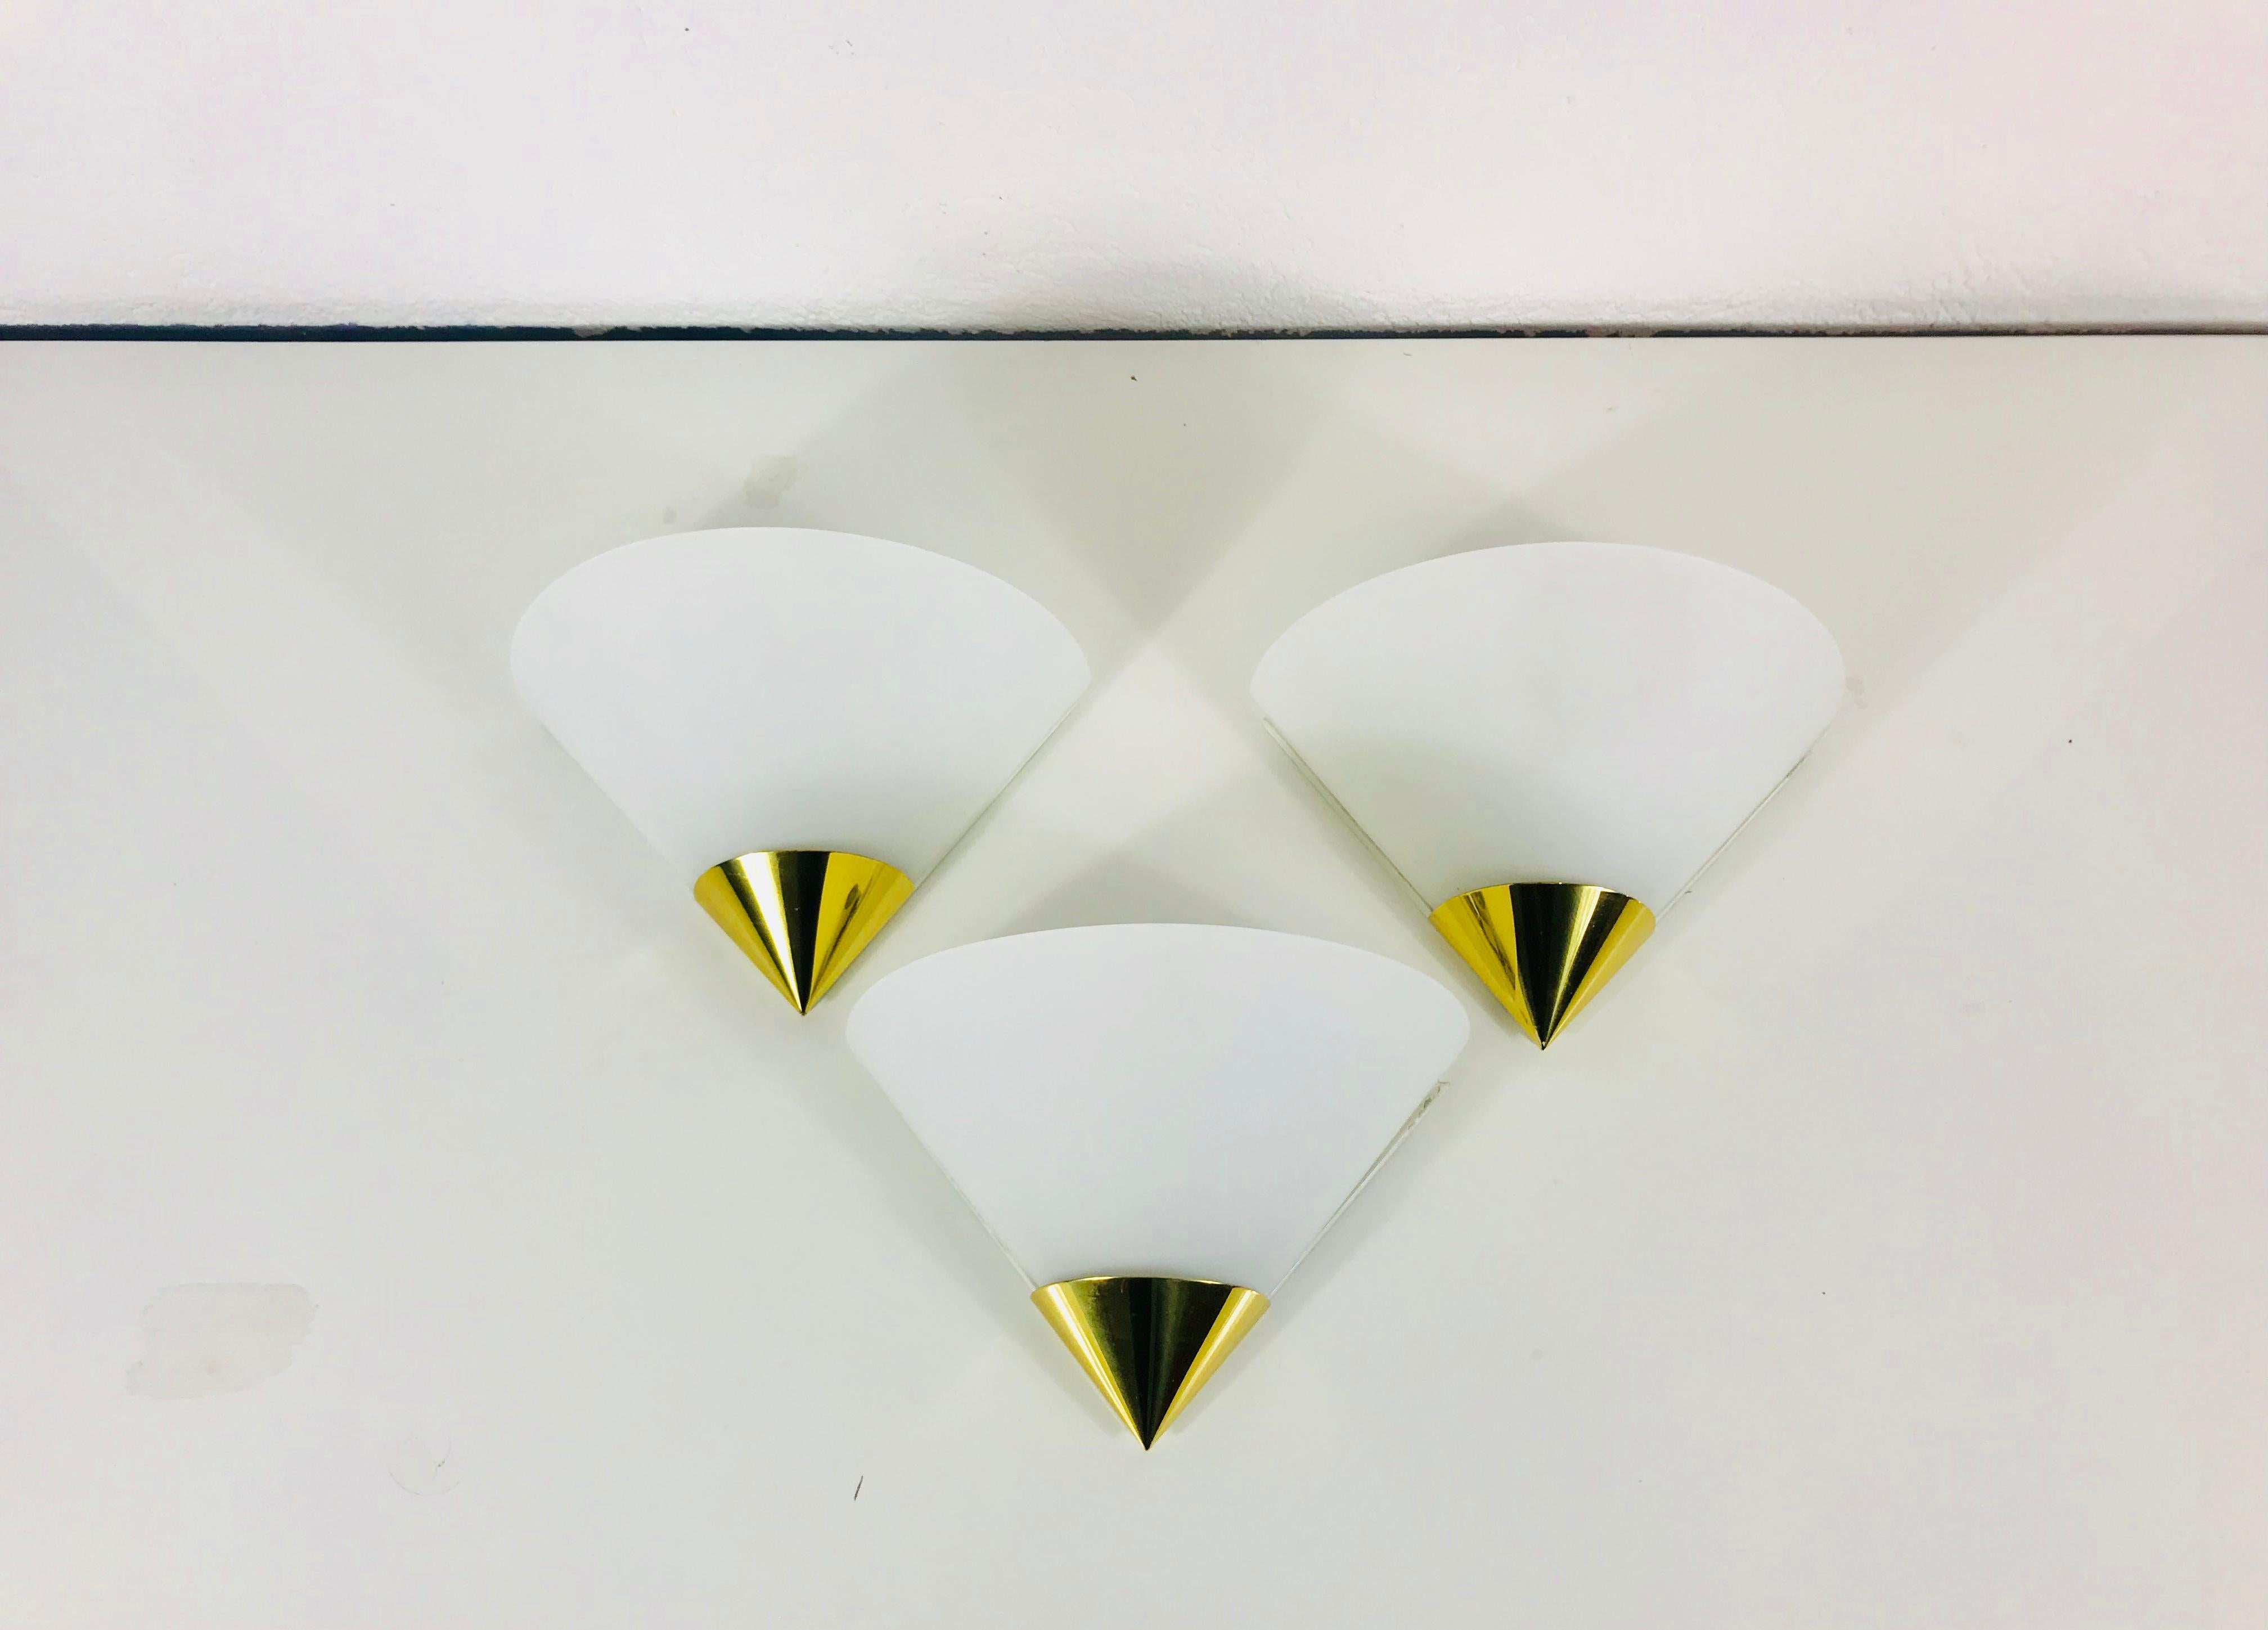 Ein schöner Satz von 3 Mid-Century Modern Wandlampen von Glashütte Limburg, hergestellt in Deutschland in den 1970er Jahren. Sie haben eine schöne Dreiecksform und sind aus Messing und Opalglas gefertigt. Die Rückseite ist aus Metall.

Die Leuchte